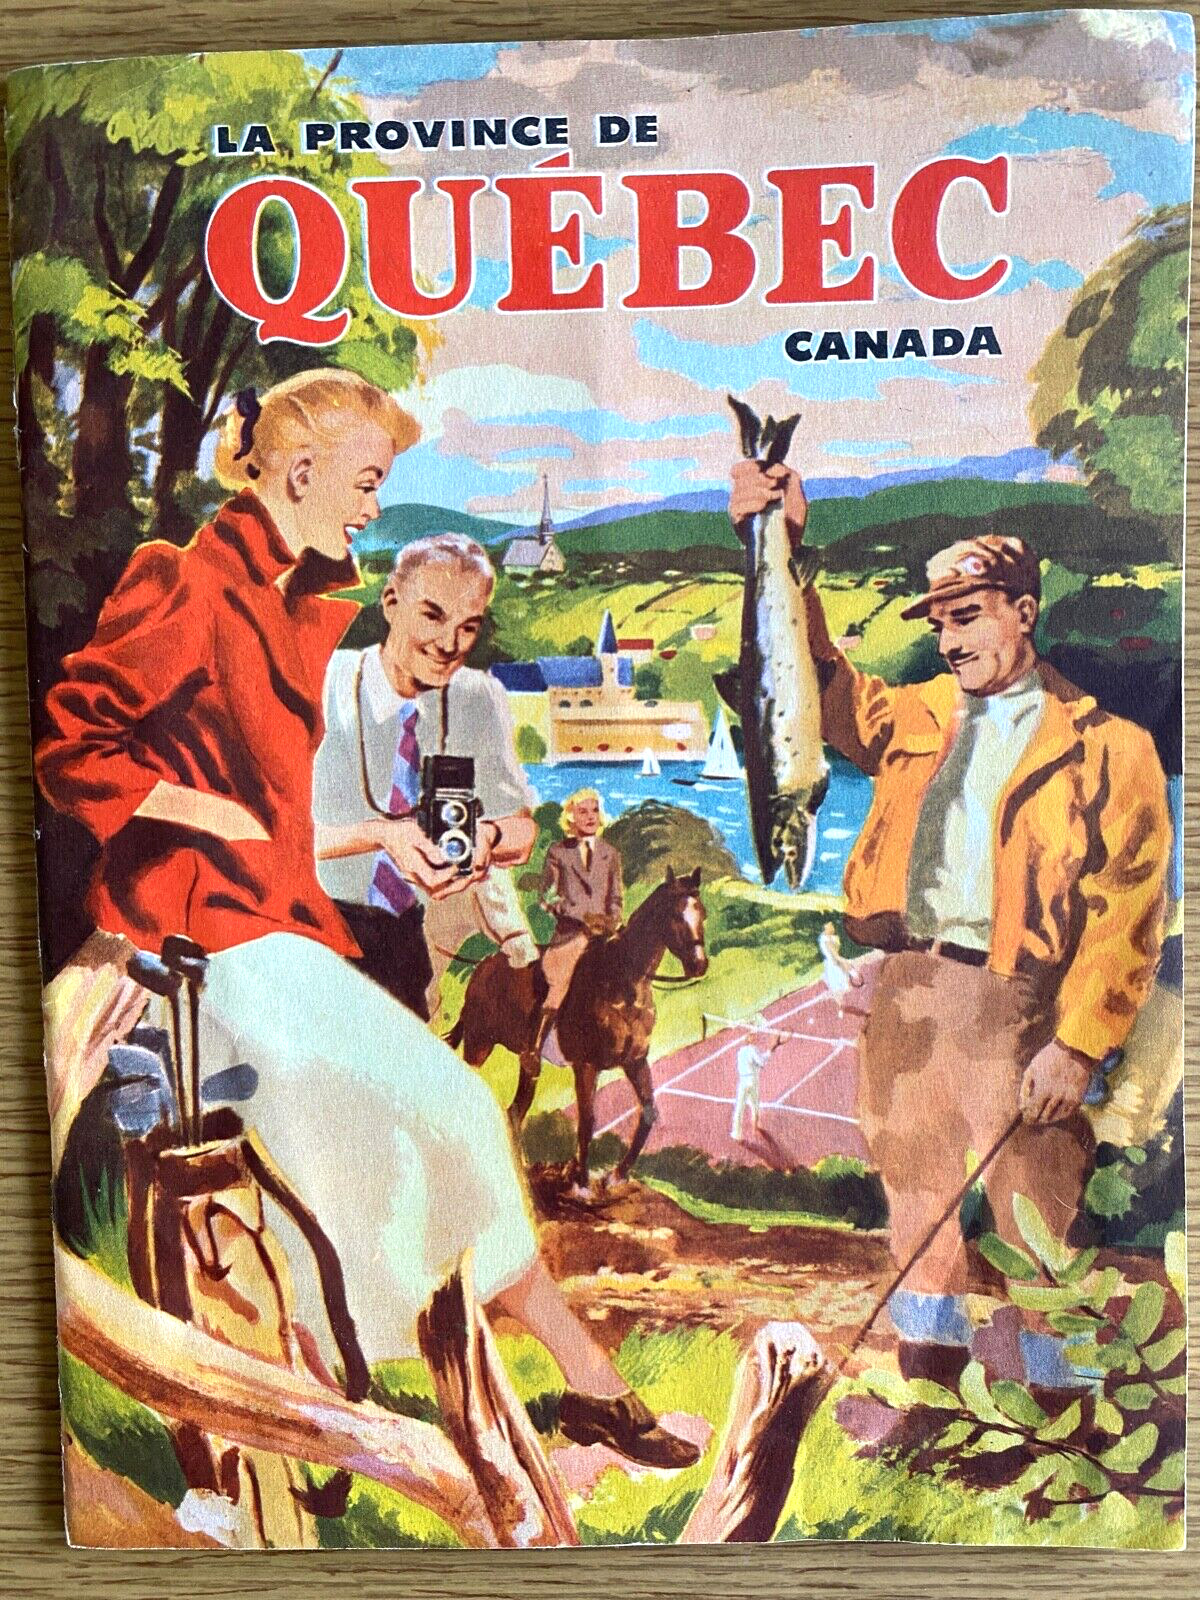 1940s LA PROVINCE DE QUEBEC vintage Canadian tourism book CANADA French, English